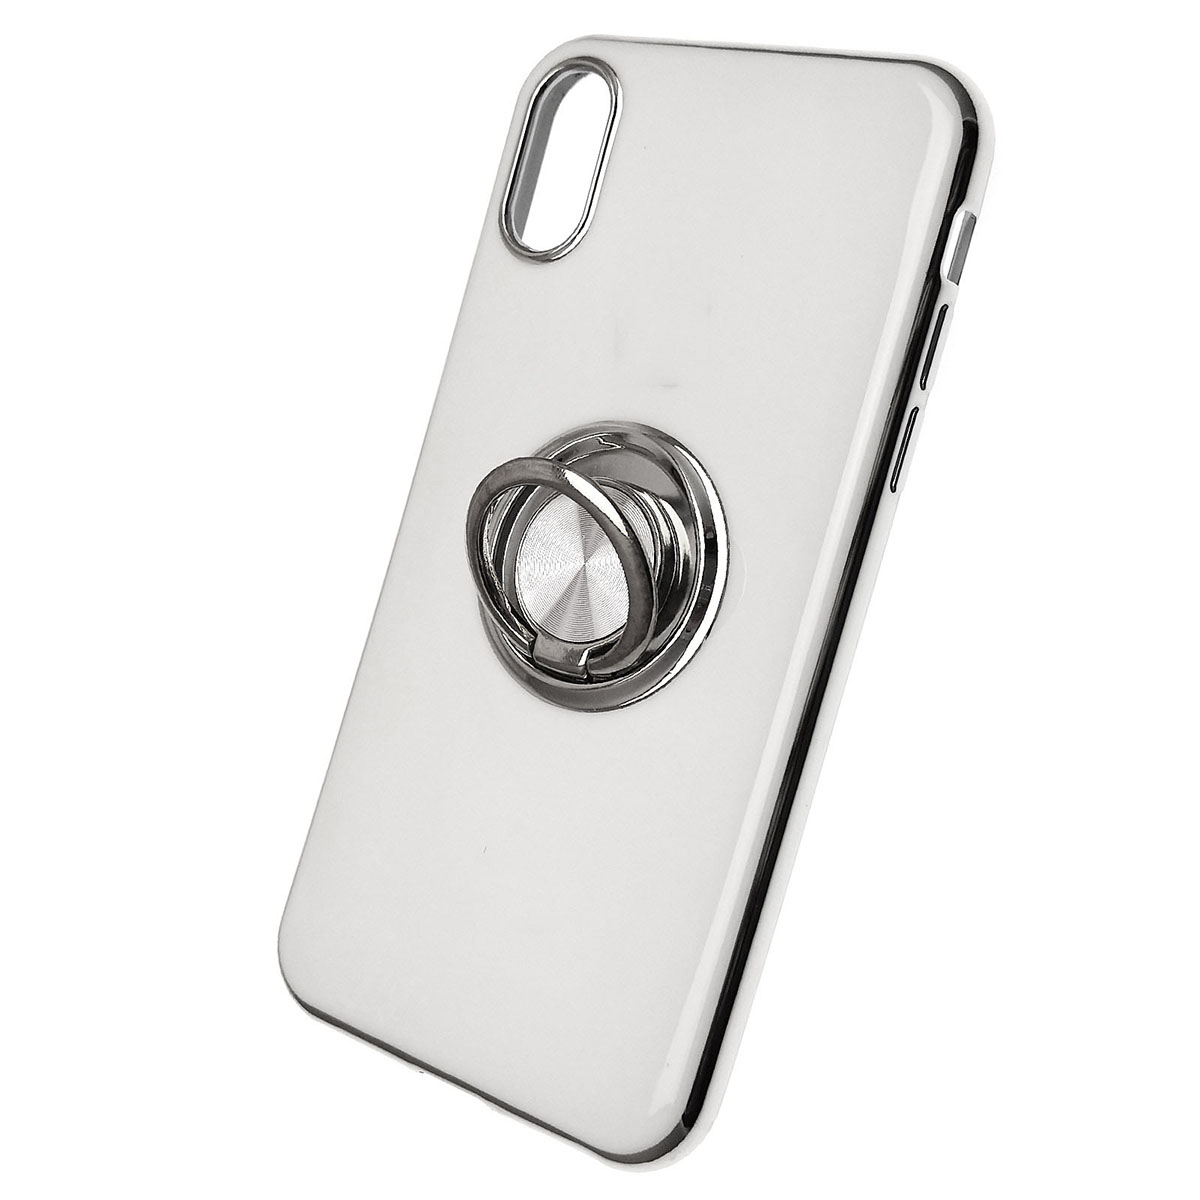 Чехол накладка для APPLE iPhone X, XS, силикон, глянец, с логотипом, кольцо держатель, цвет белый.